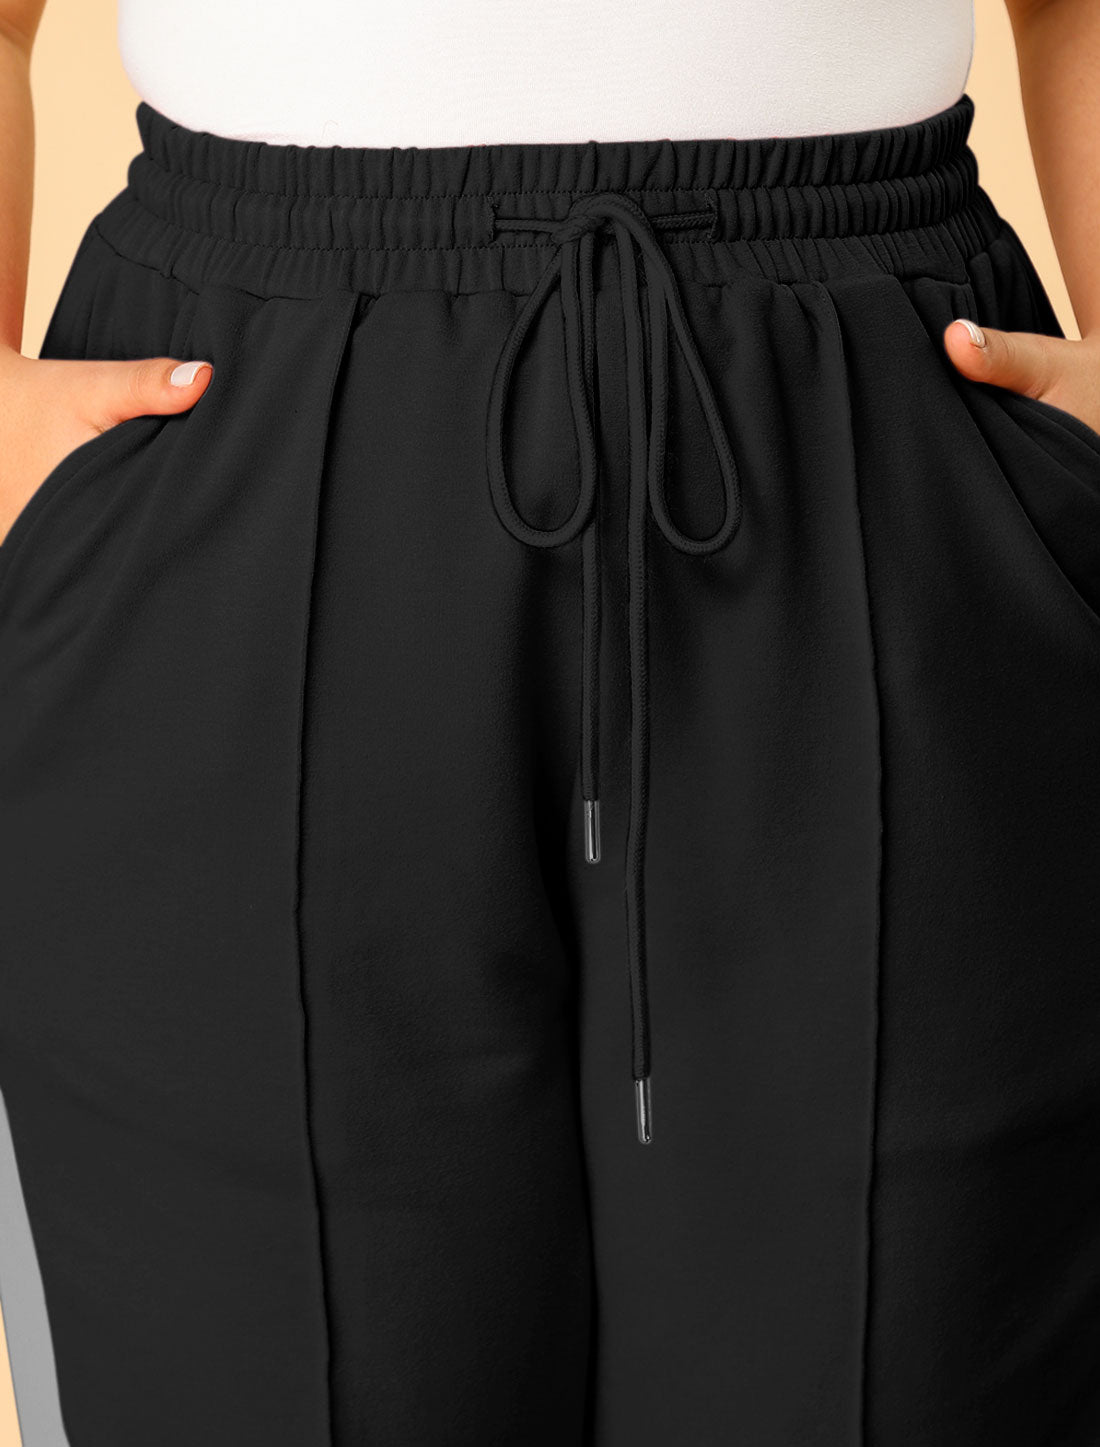 Bublédon Plus Size Sweatpants Elastic Waist Contrast Color Lounge Jogger Pants